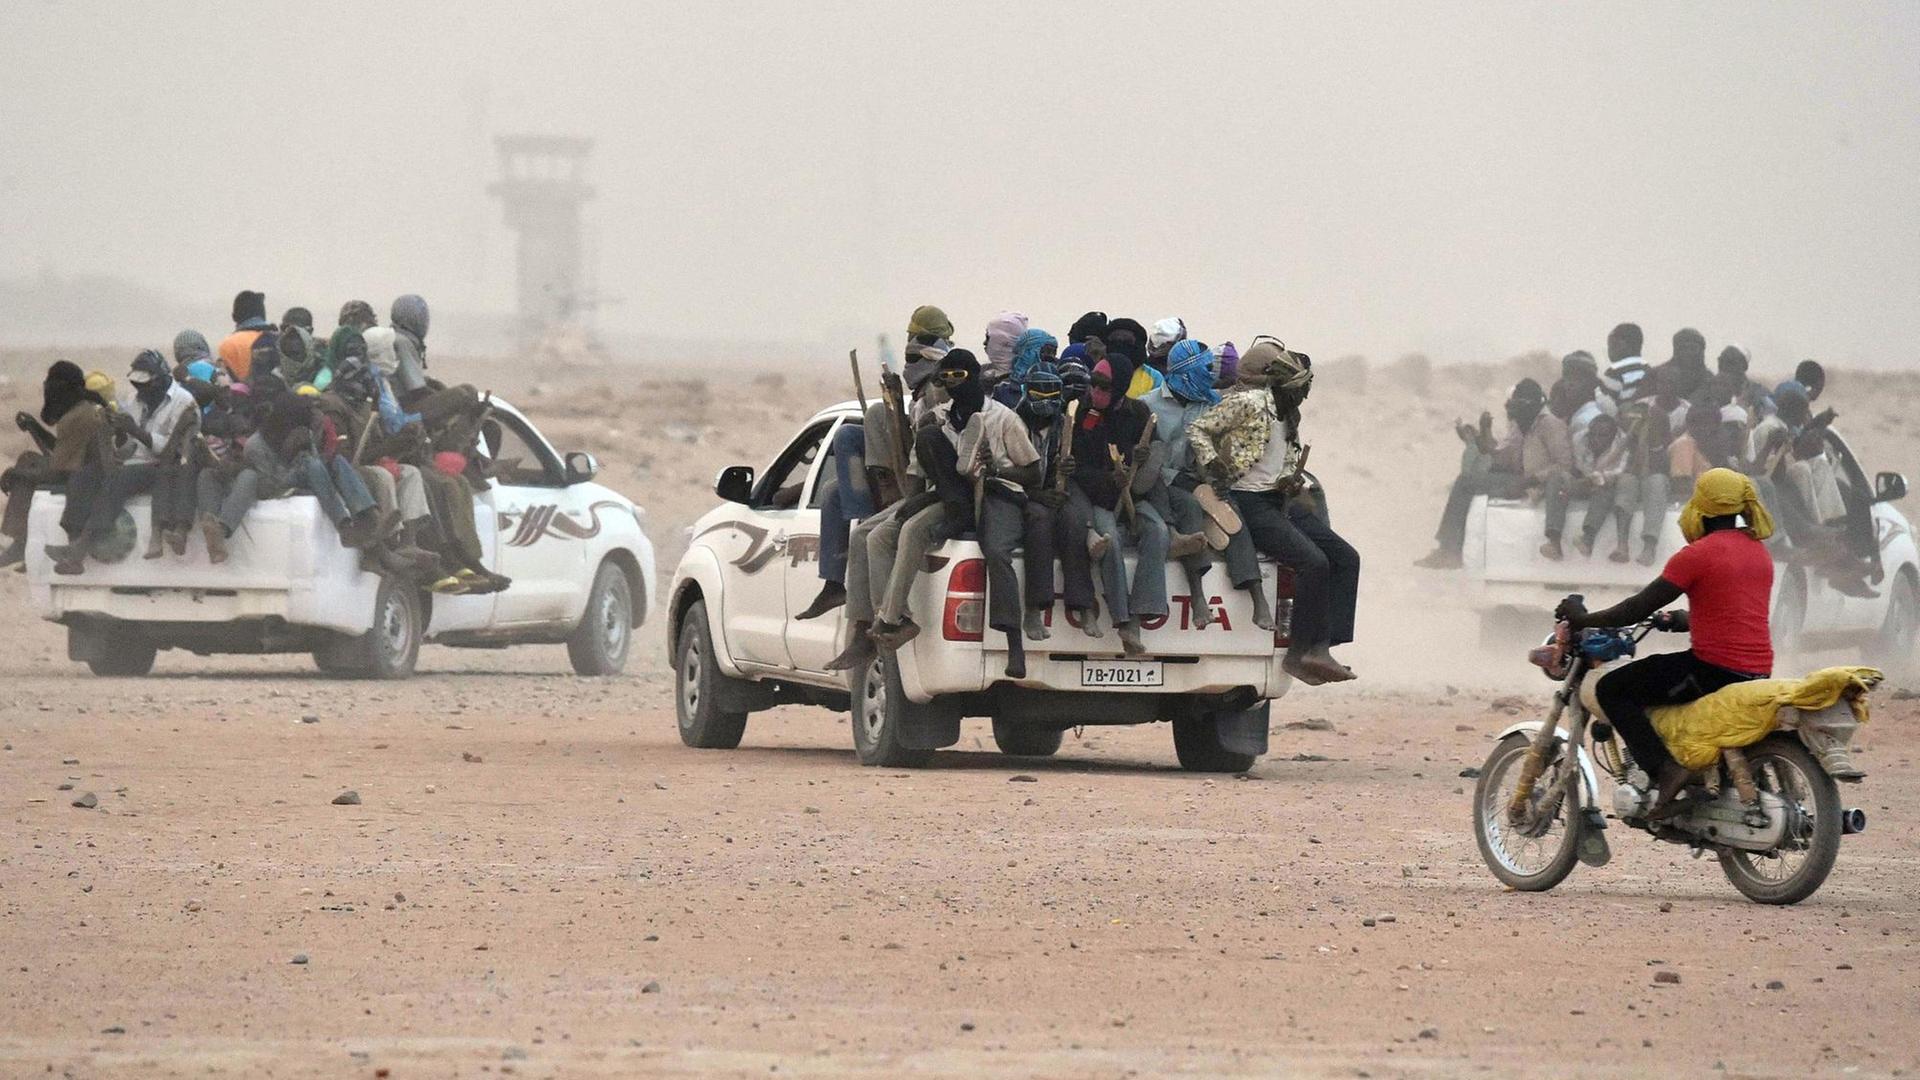 Flüchtlinge fahren von Agadez in Niger Richtung Libyen, um von dort nach Europa zu gelangen.